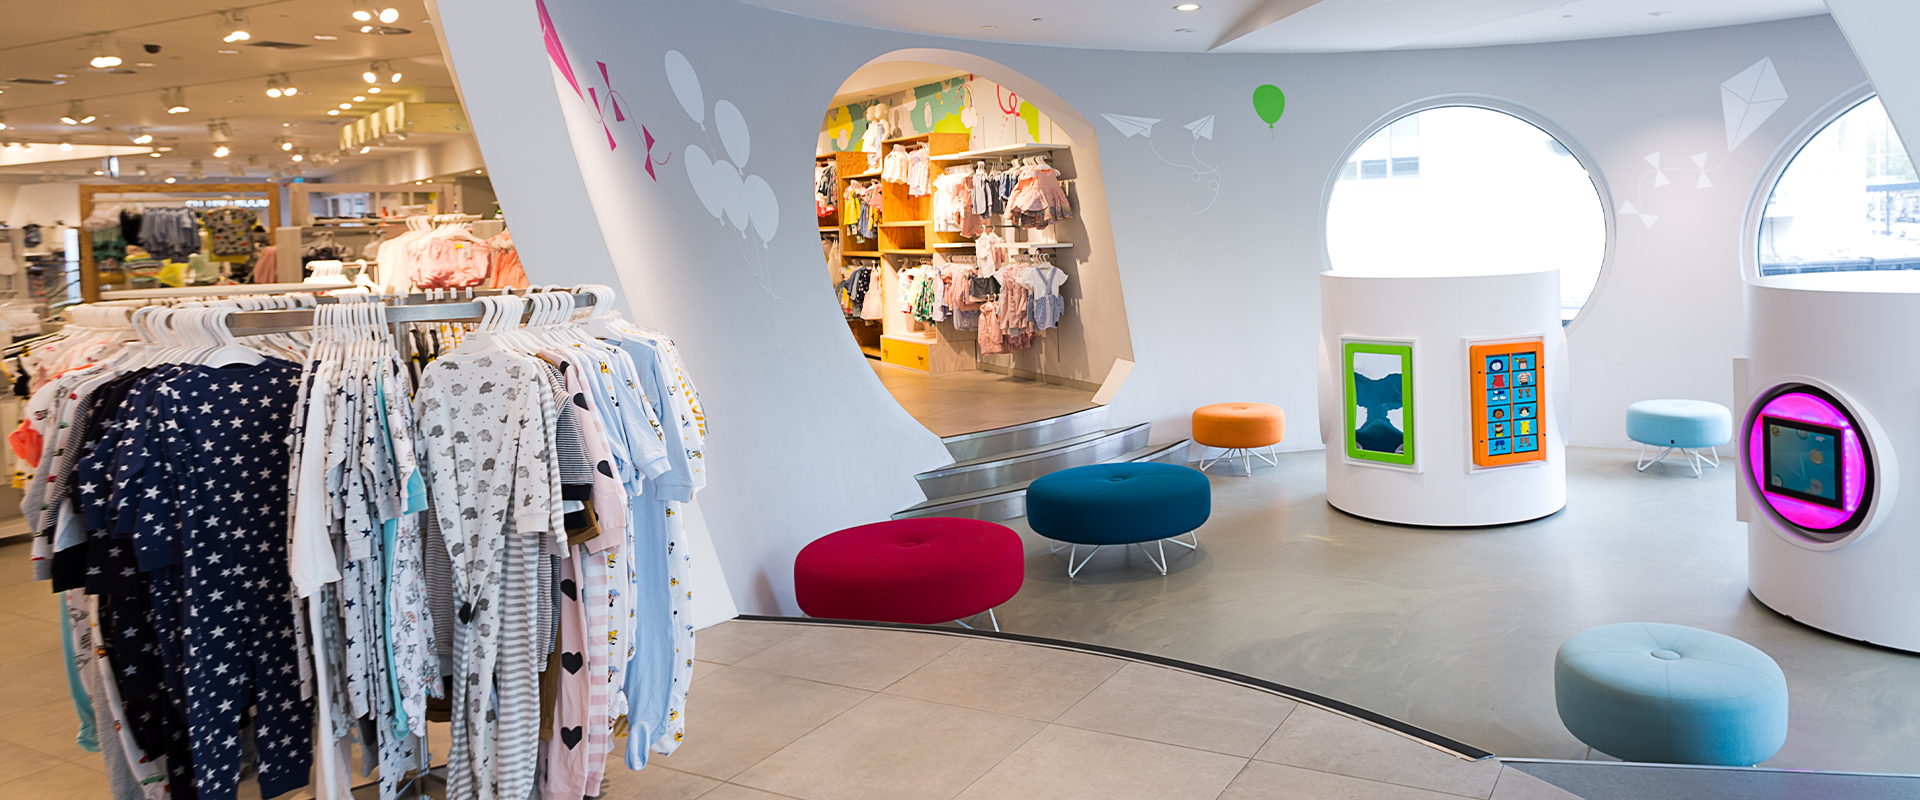 H&M Rotterdam : aire de jeux pour enfants